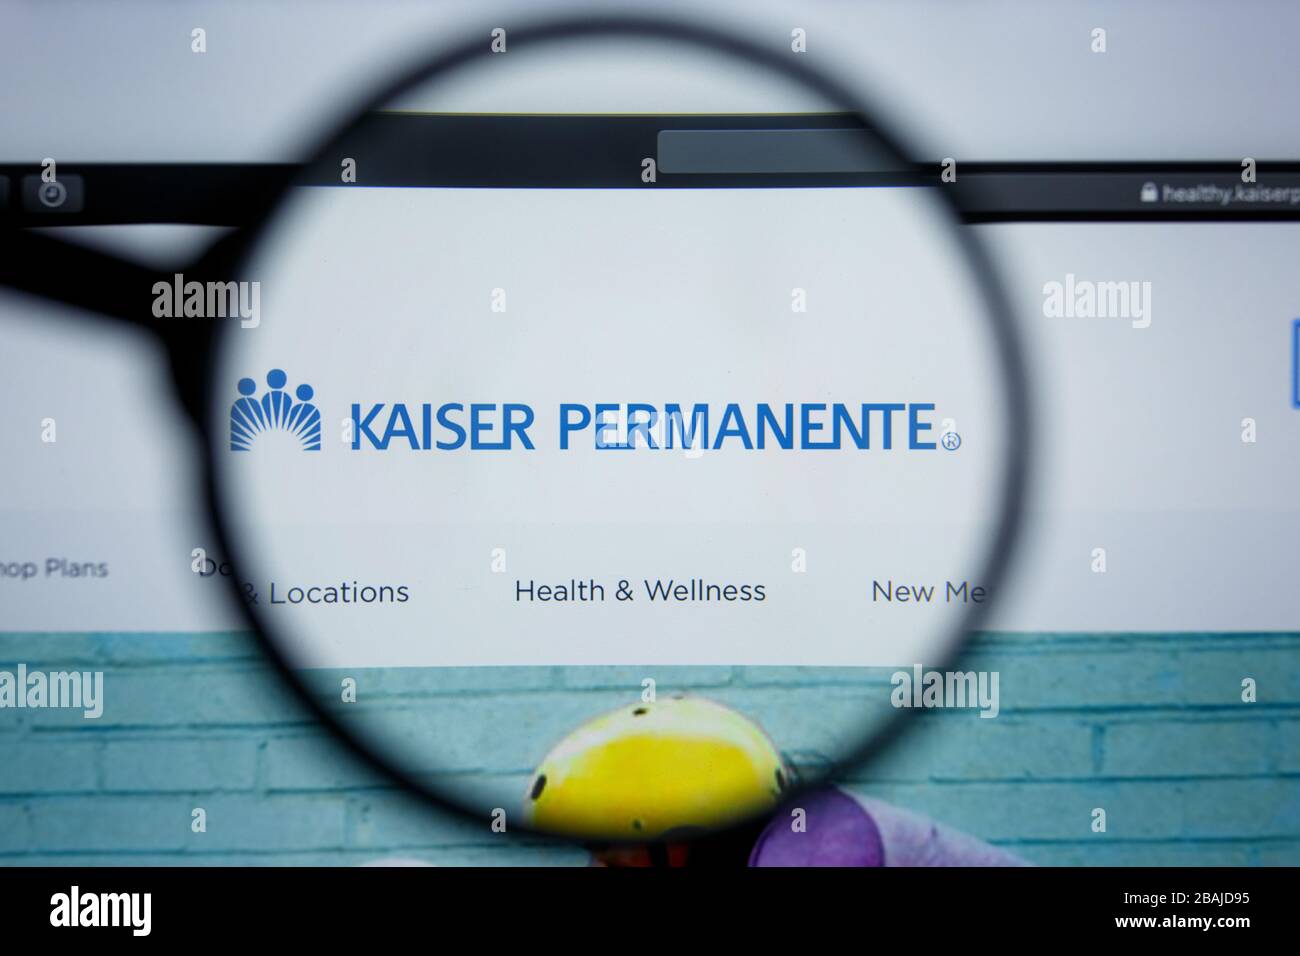 Los Angeles, Kalifornien, USA - 17. Juli 2019: Illudative Editorial der HOMEPAGE DER WEBSITE VON KAISER AMBIENTE. Kaiser PERMANENTE Logo auf dem Display sichtbar. Stockfoto